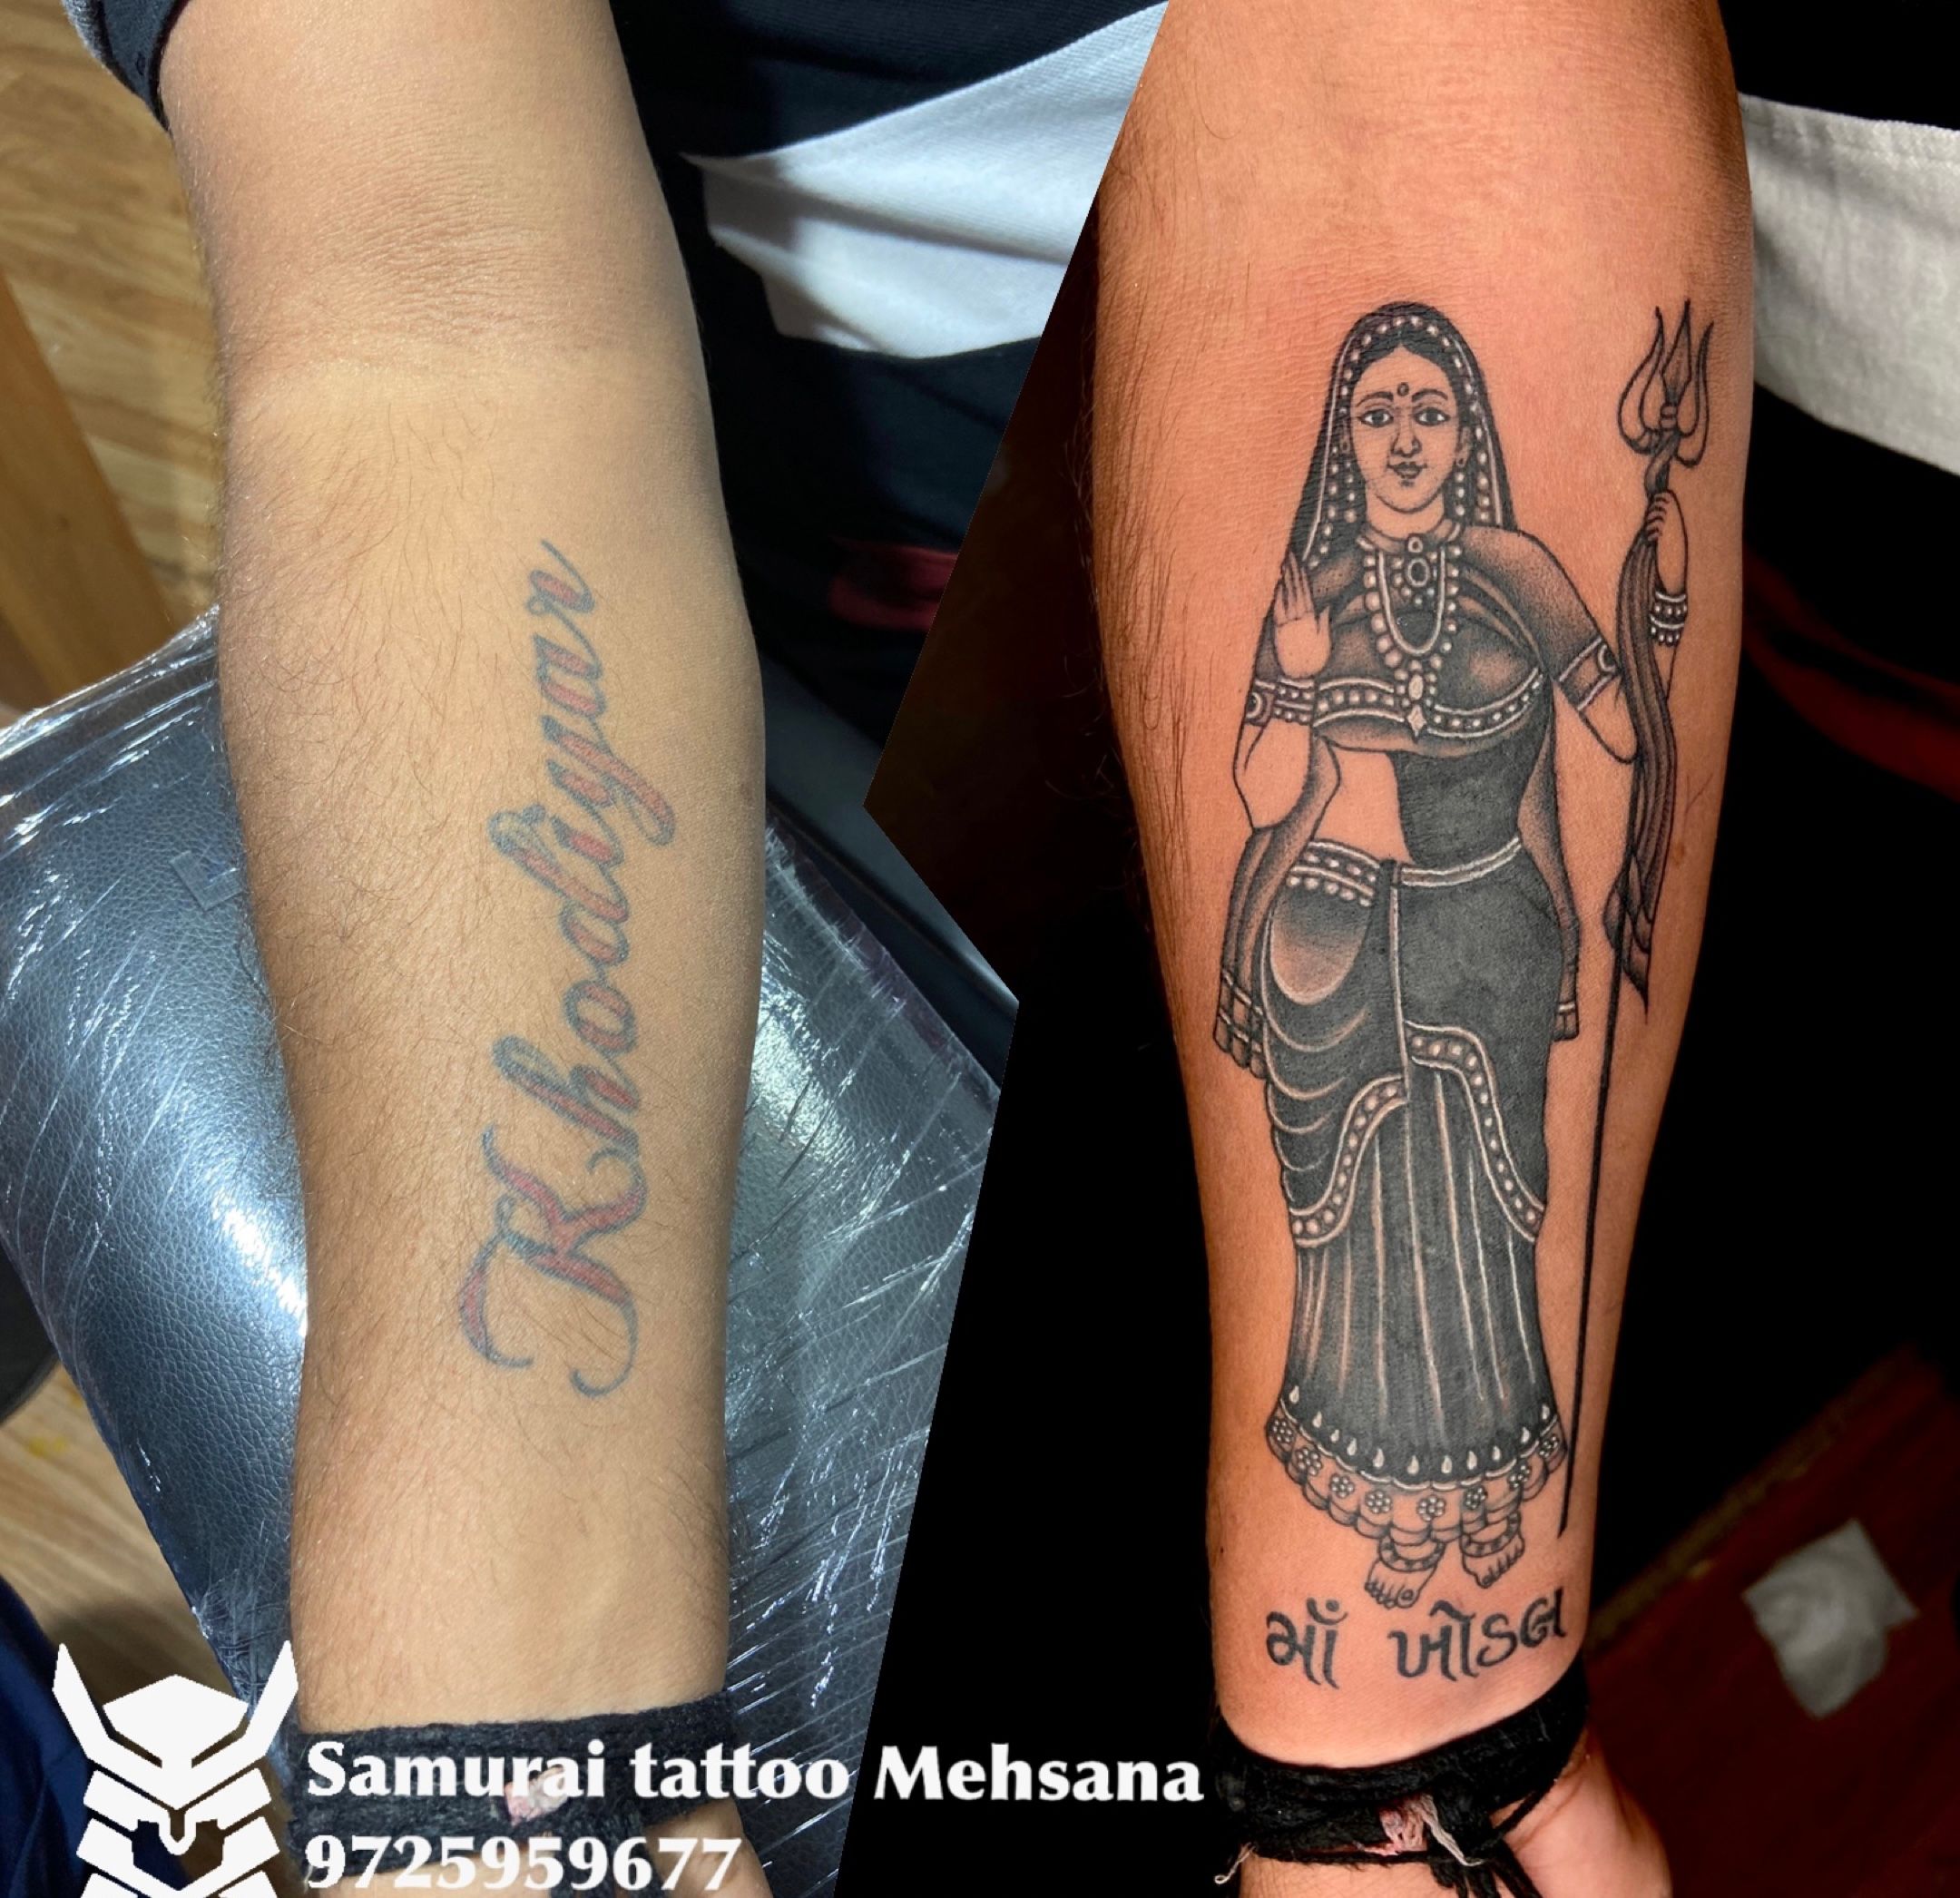 Khodal name tattoo | Tattoos, Name tattoo, God tattoos